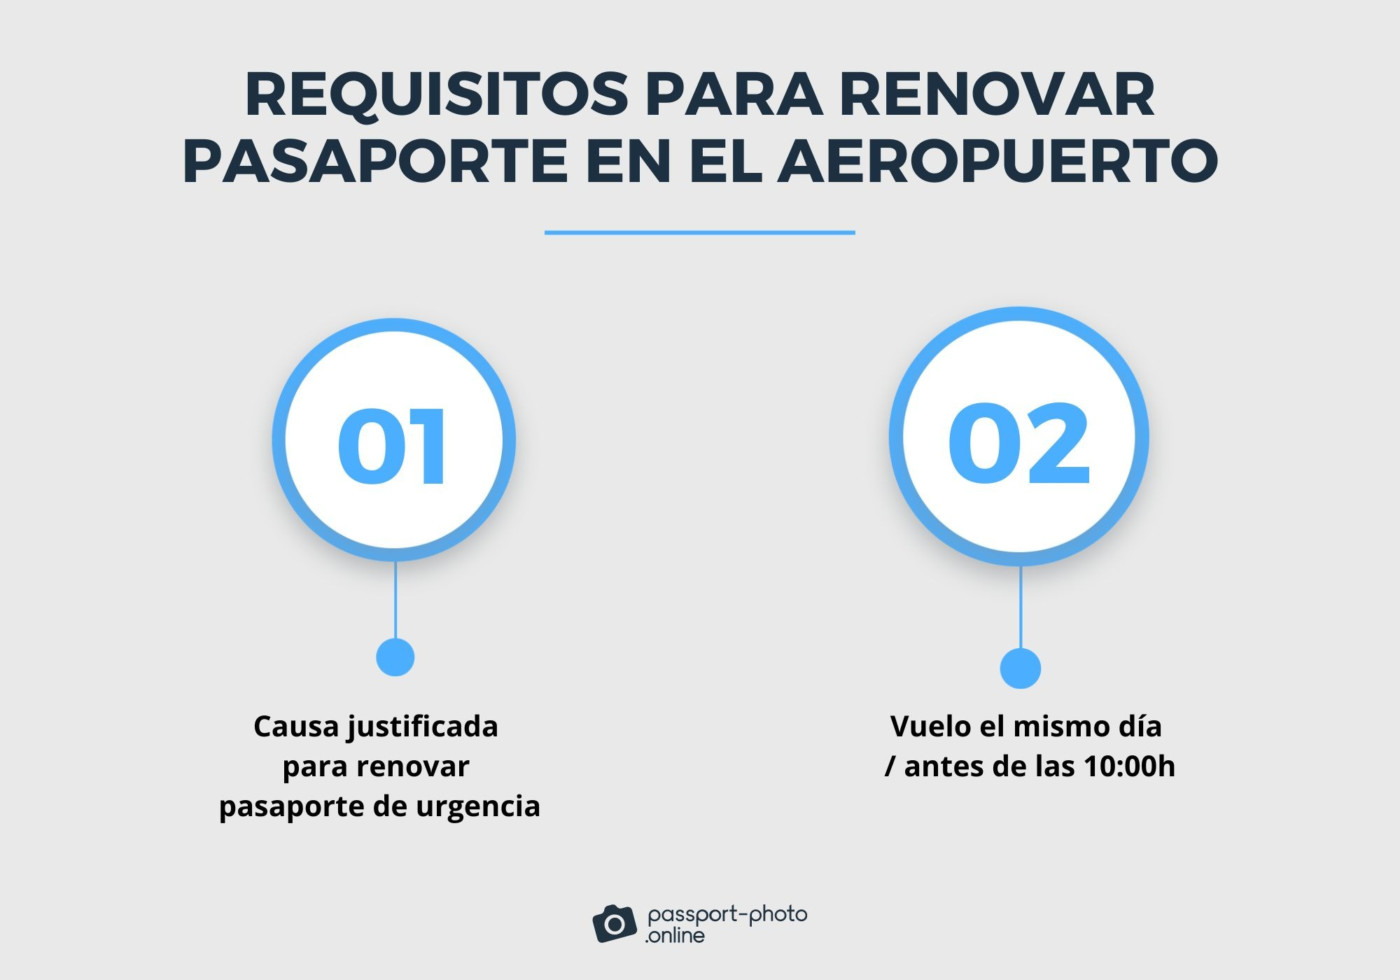 La imagen muestra los dos requisitos establecidos para renovar un pasaporte en el aeropuerto. El color gris y distintas tonalidades del azul predominan.